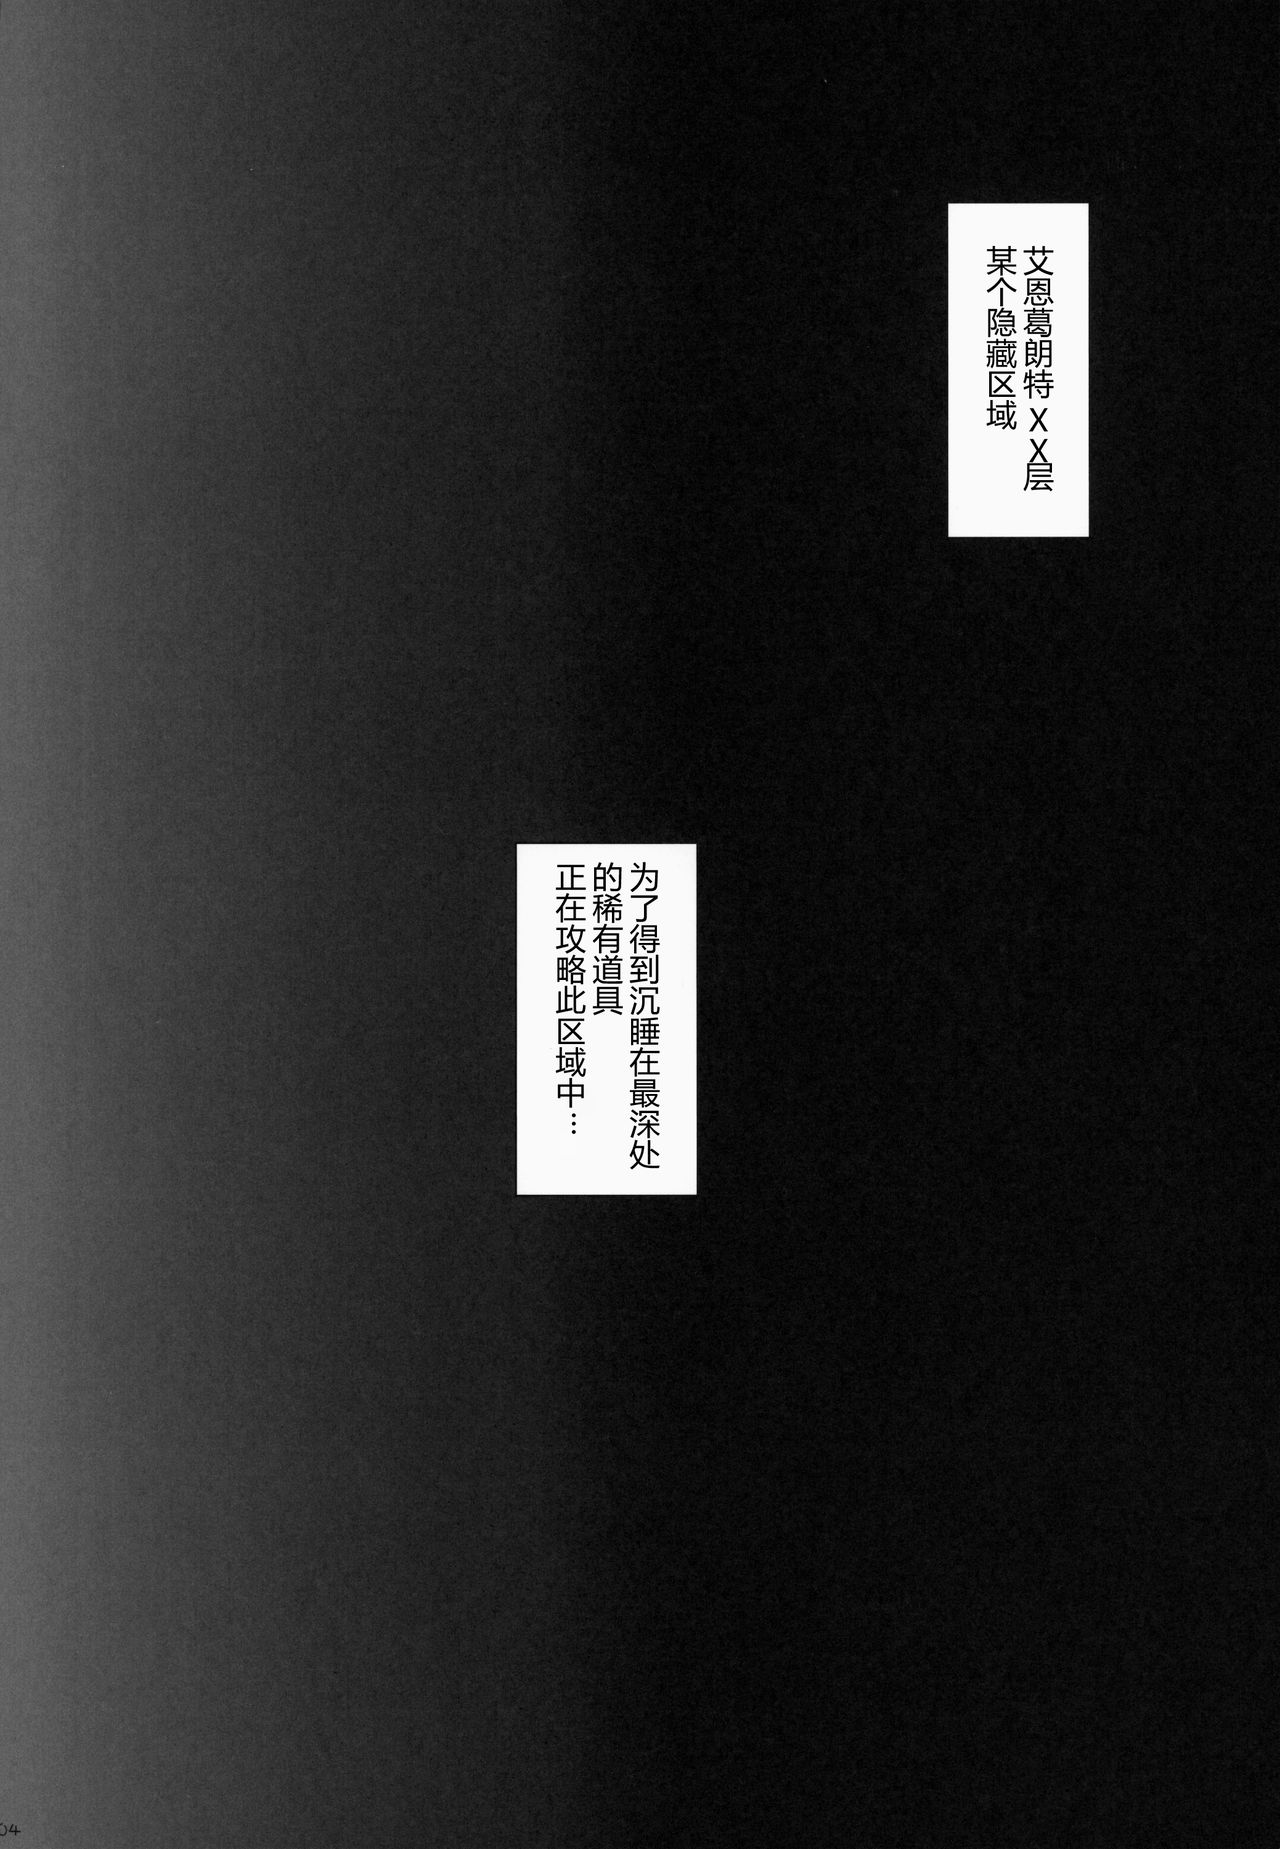 (サンクリ65) [千歳烏山第2出張所 (真未たつや)] Digital × Temptation 2 (ソードアート・オンライン) [中国翻訳]